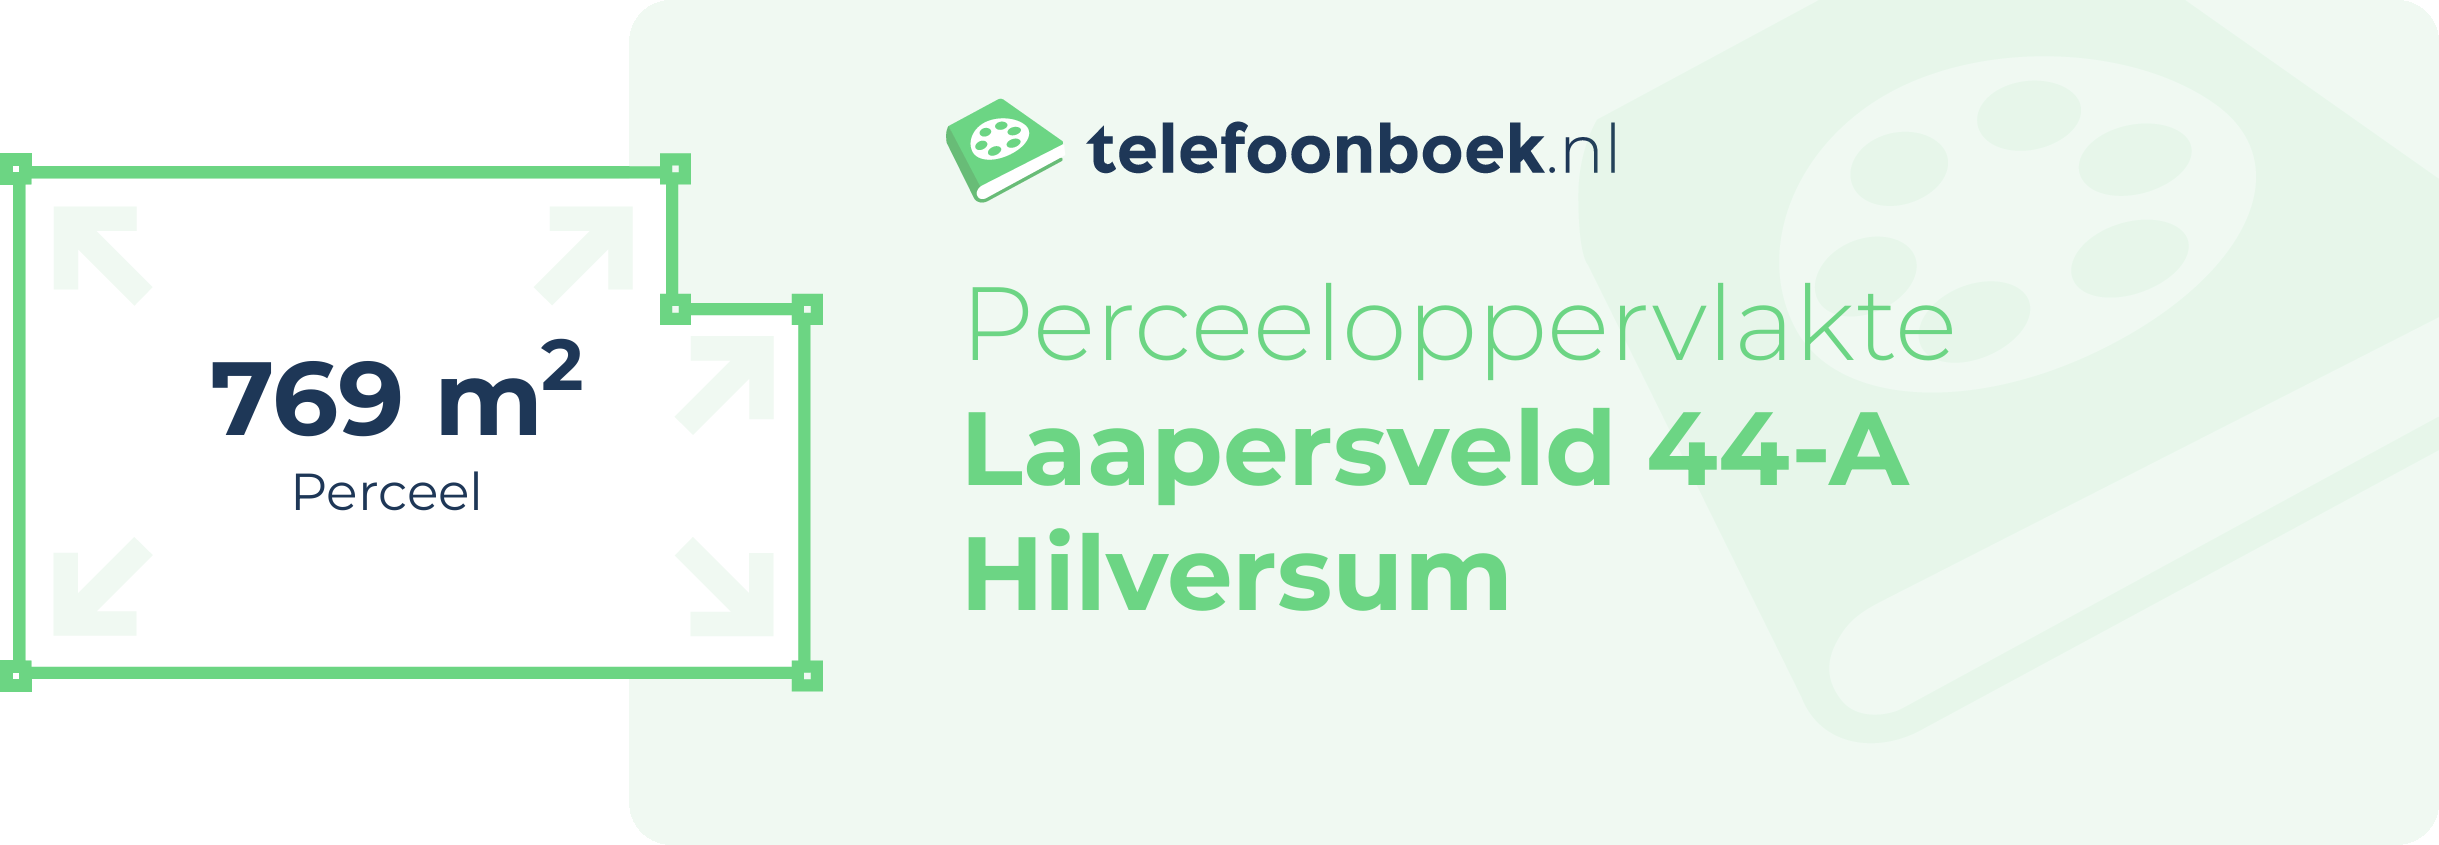 Perceeloppervlakte Laapersveld 44-A Hilversum